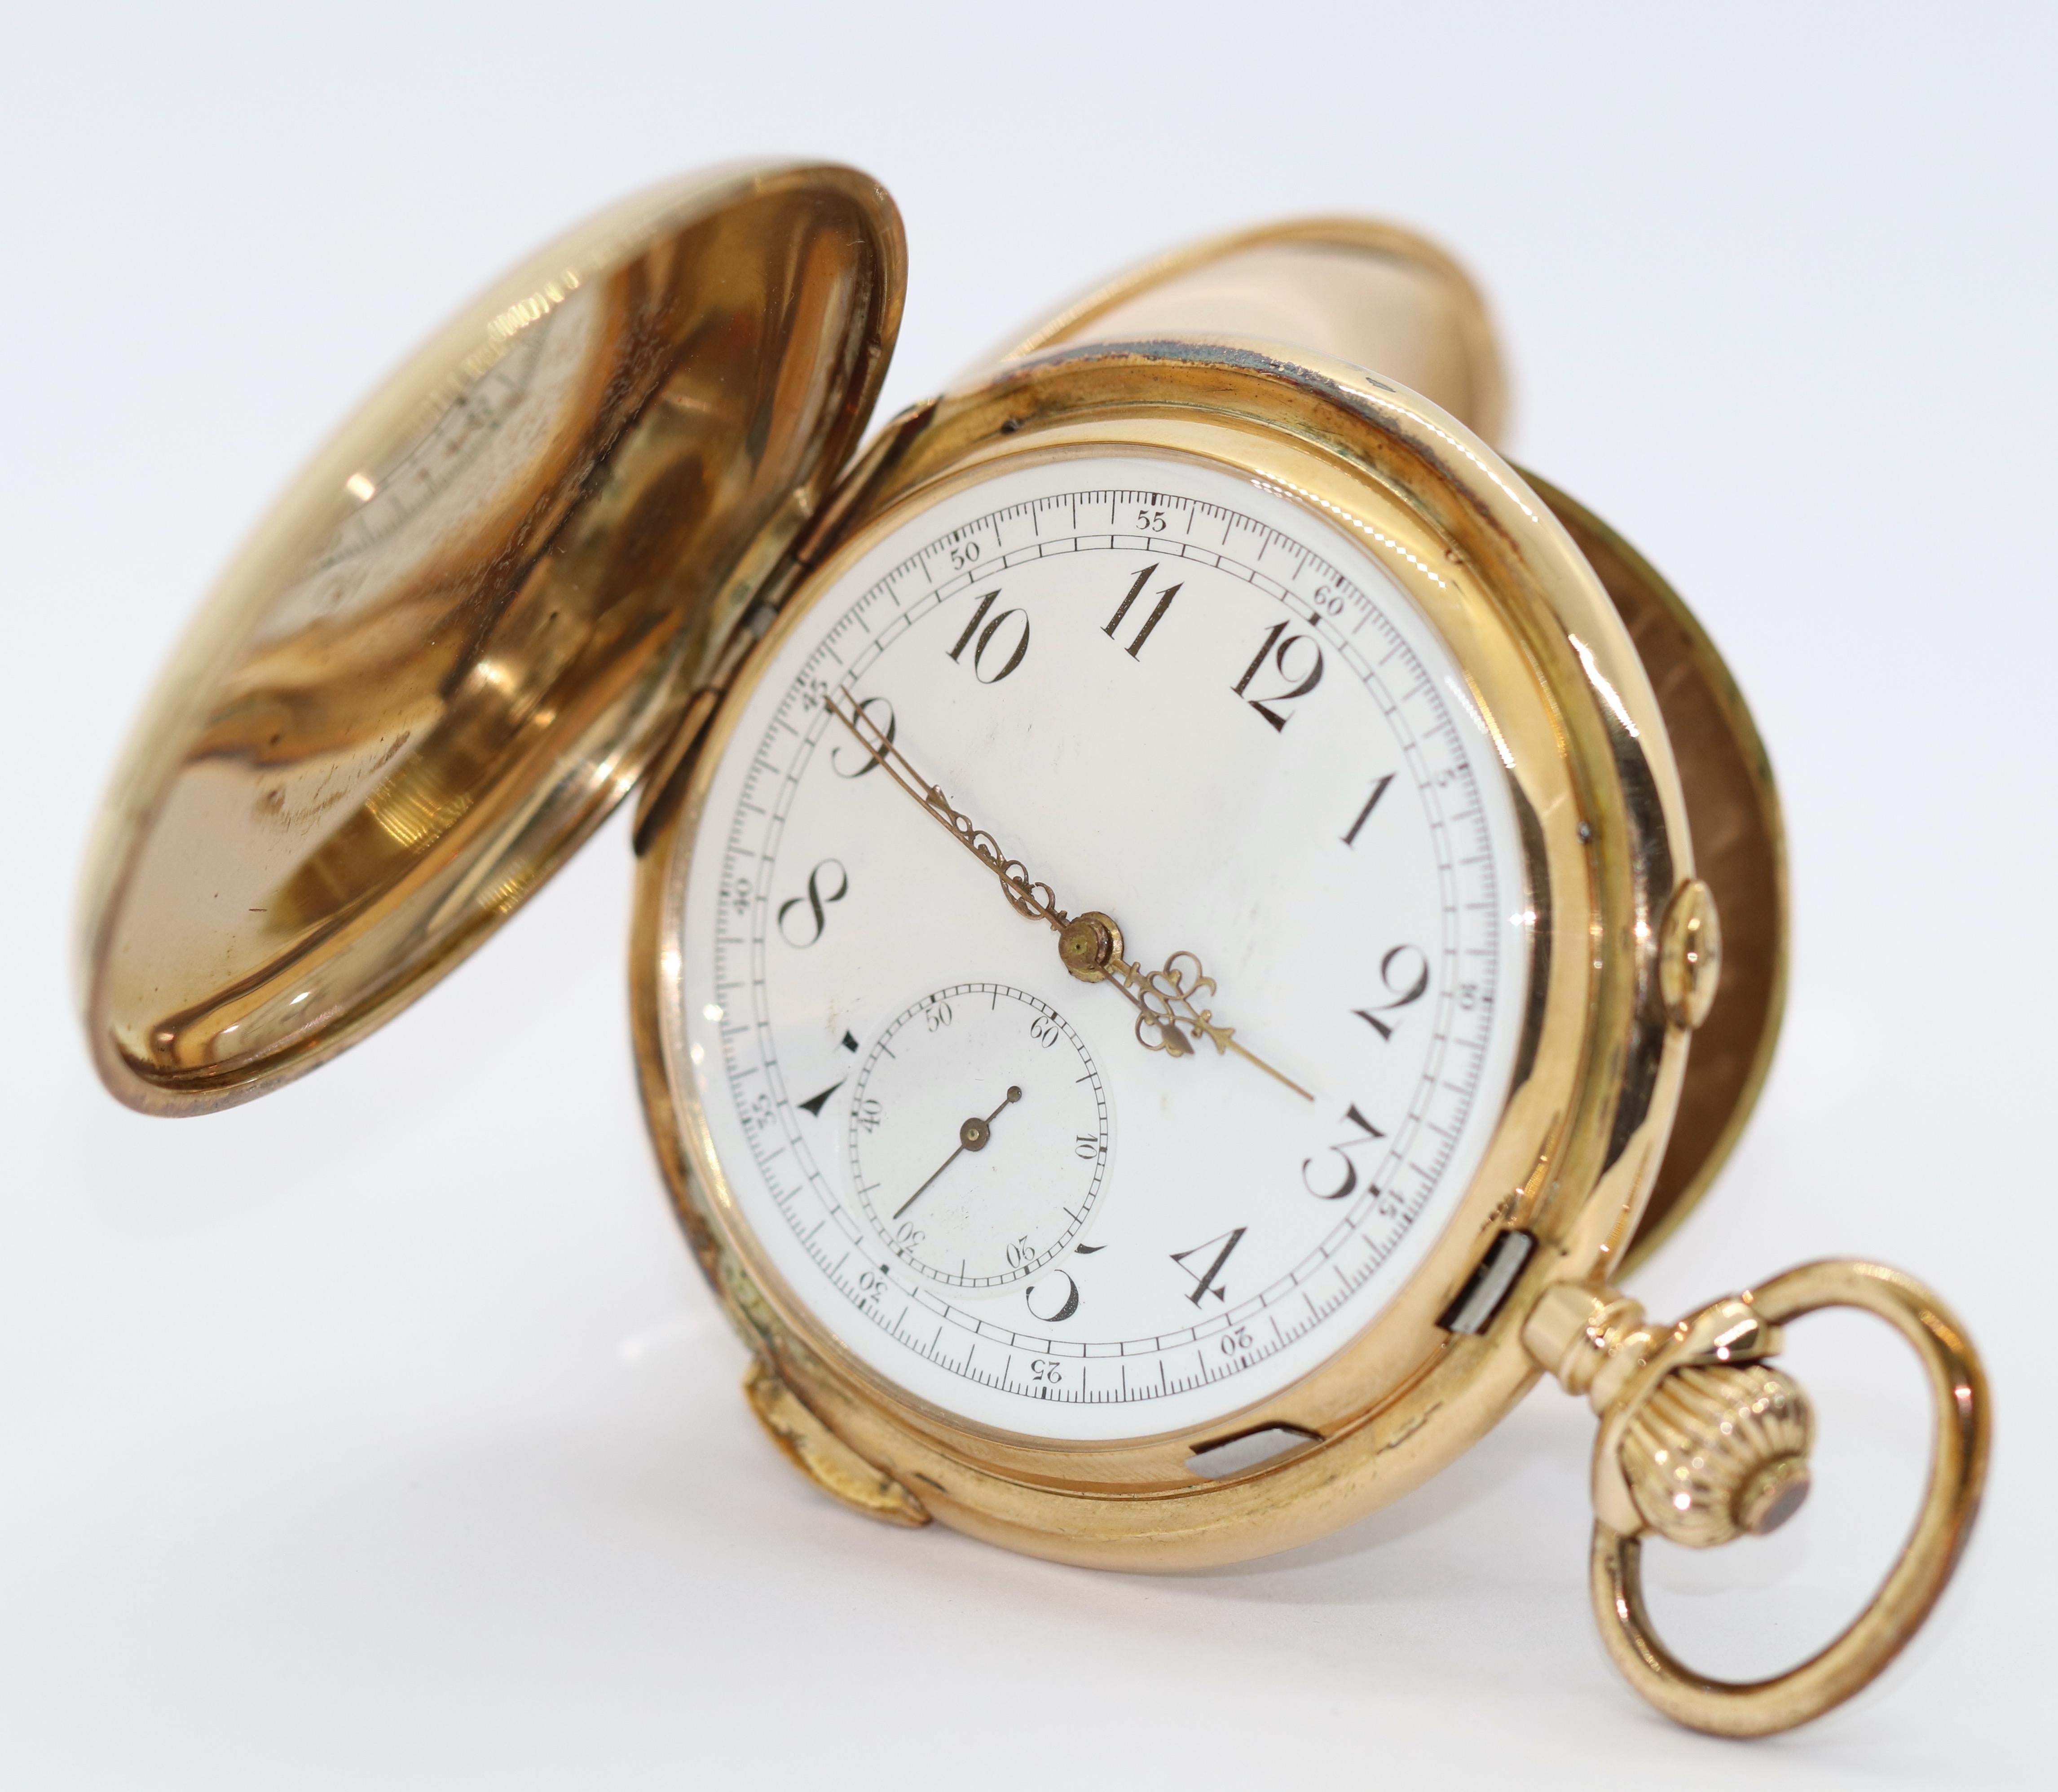 Antike Chronograph & Quarter Repeater Taschenuhr Hunter 14 Karat Gold.

Die Taschenuhr kann aufgezogen werden und funktioniert.

Mit Echtheitszertifikat.